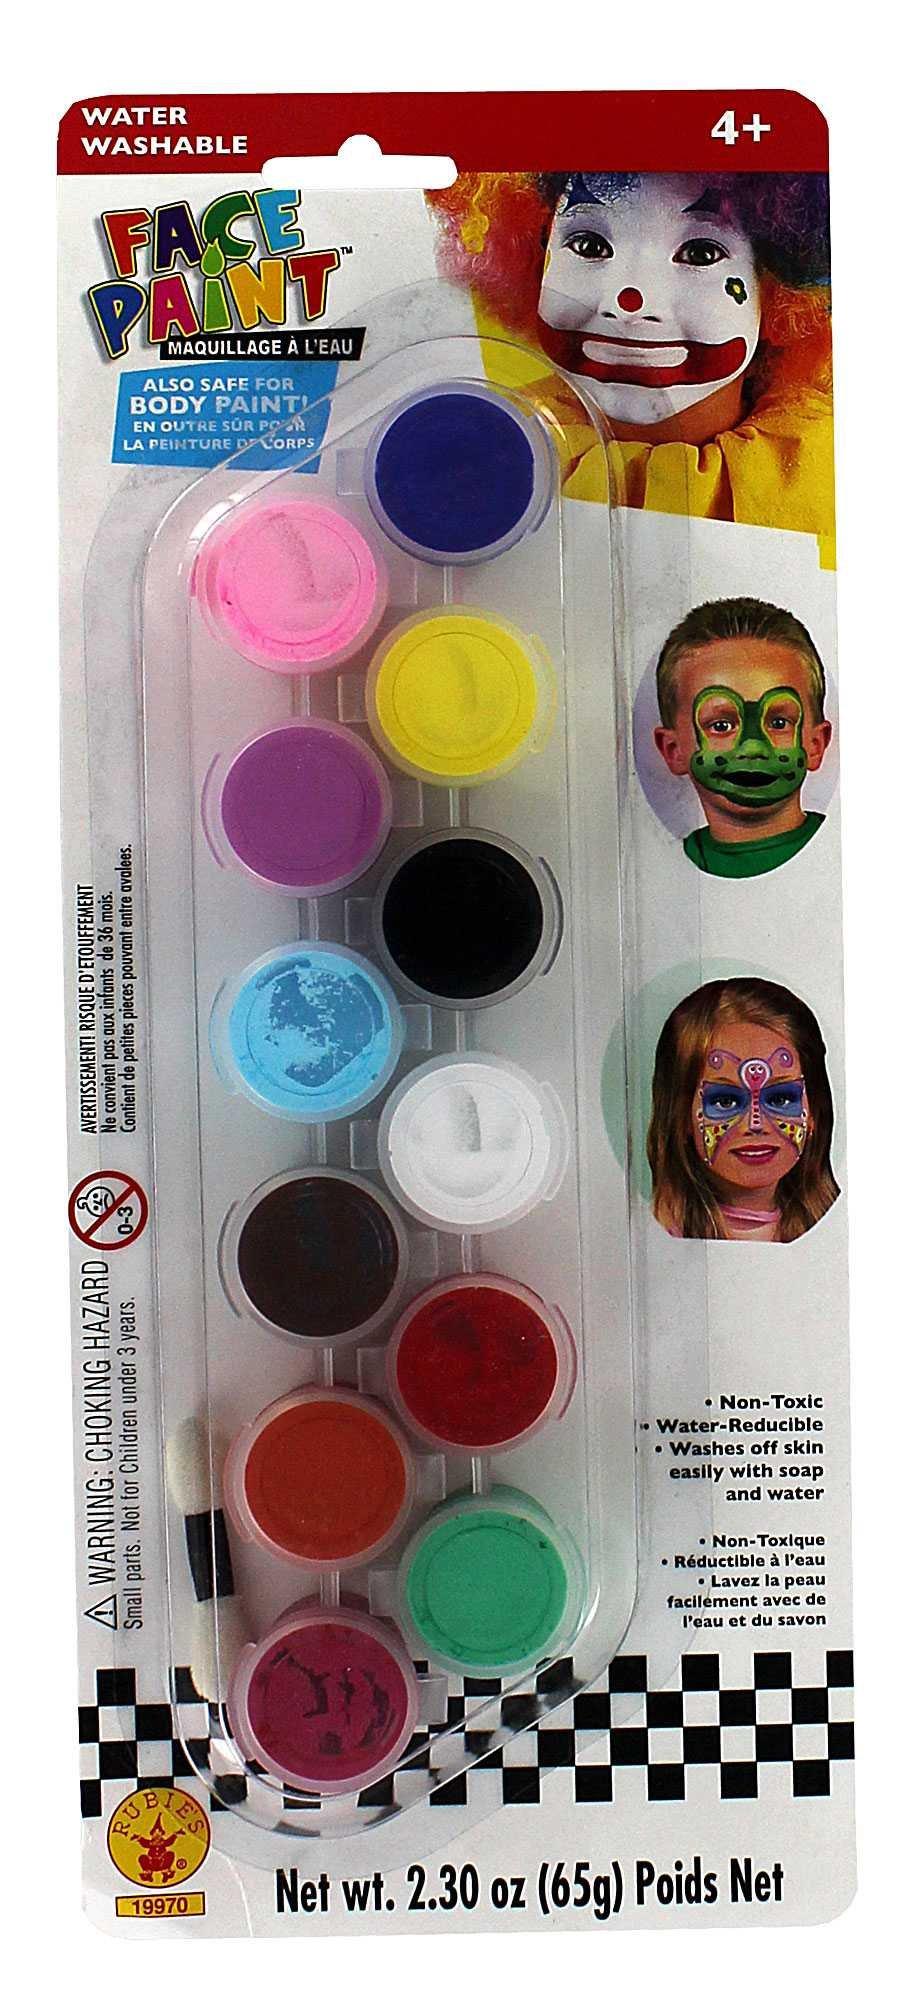 Snazaroo Makeup Sponges for Face Paint 4 pcs